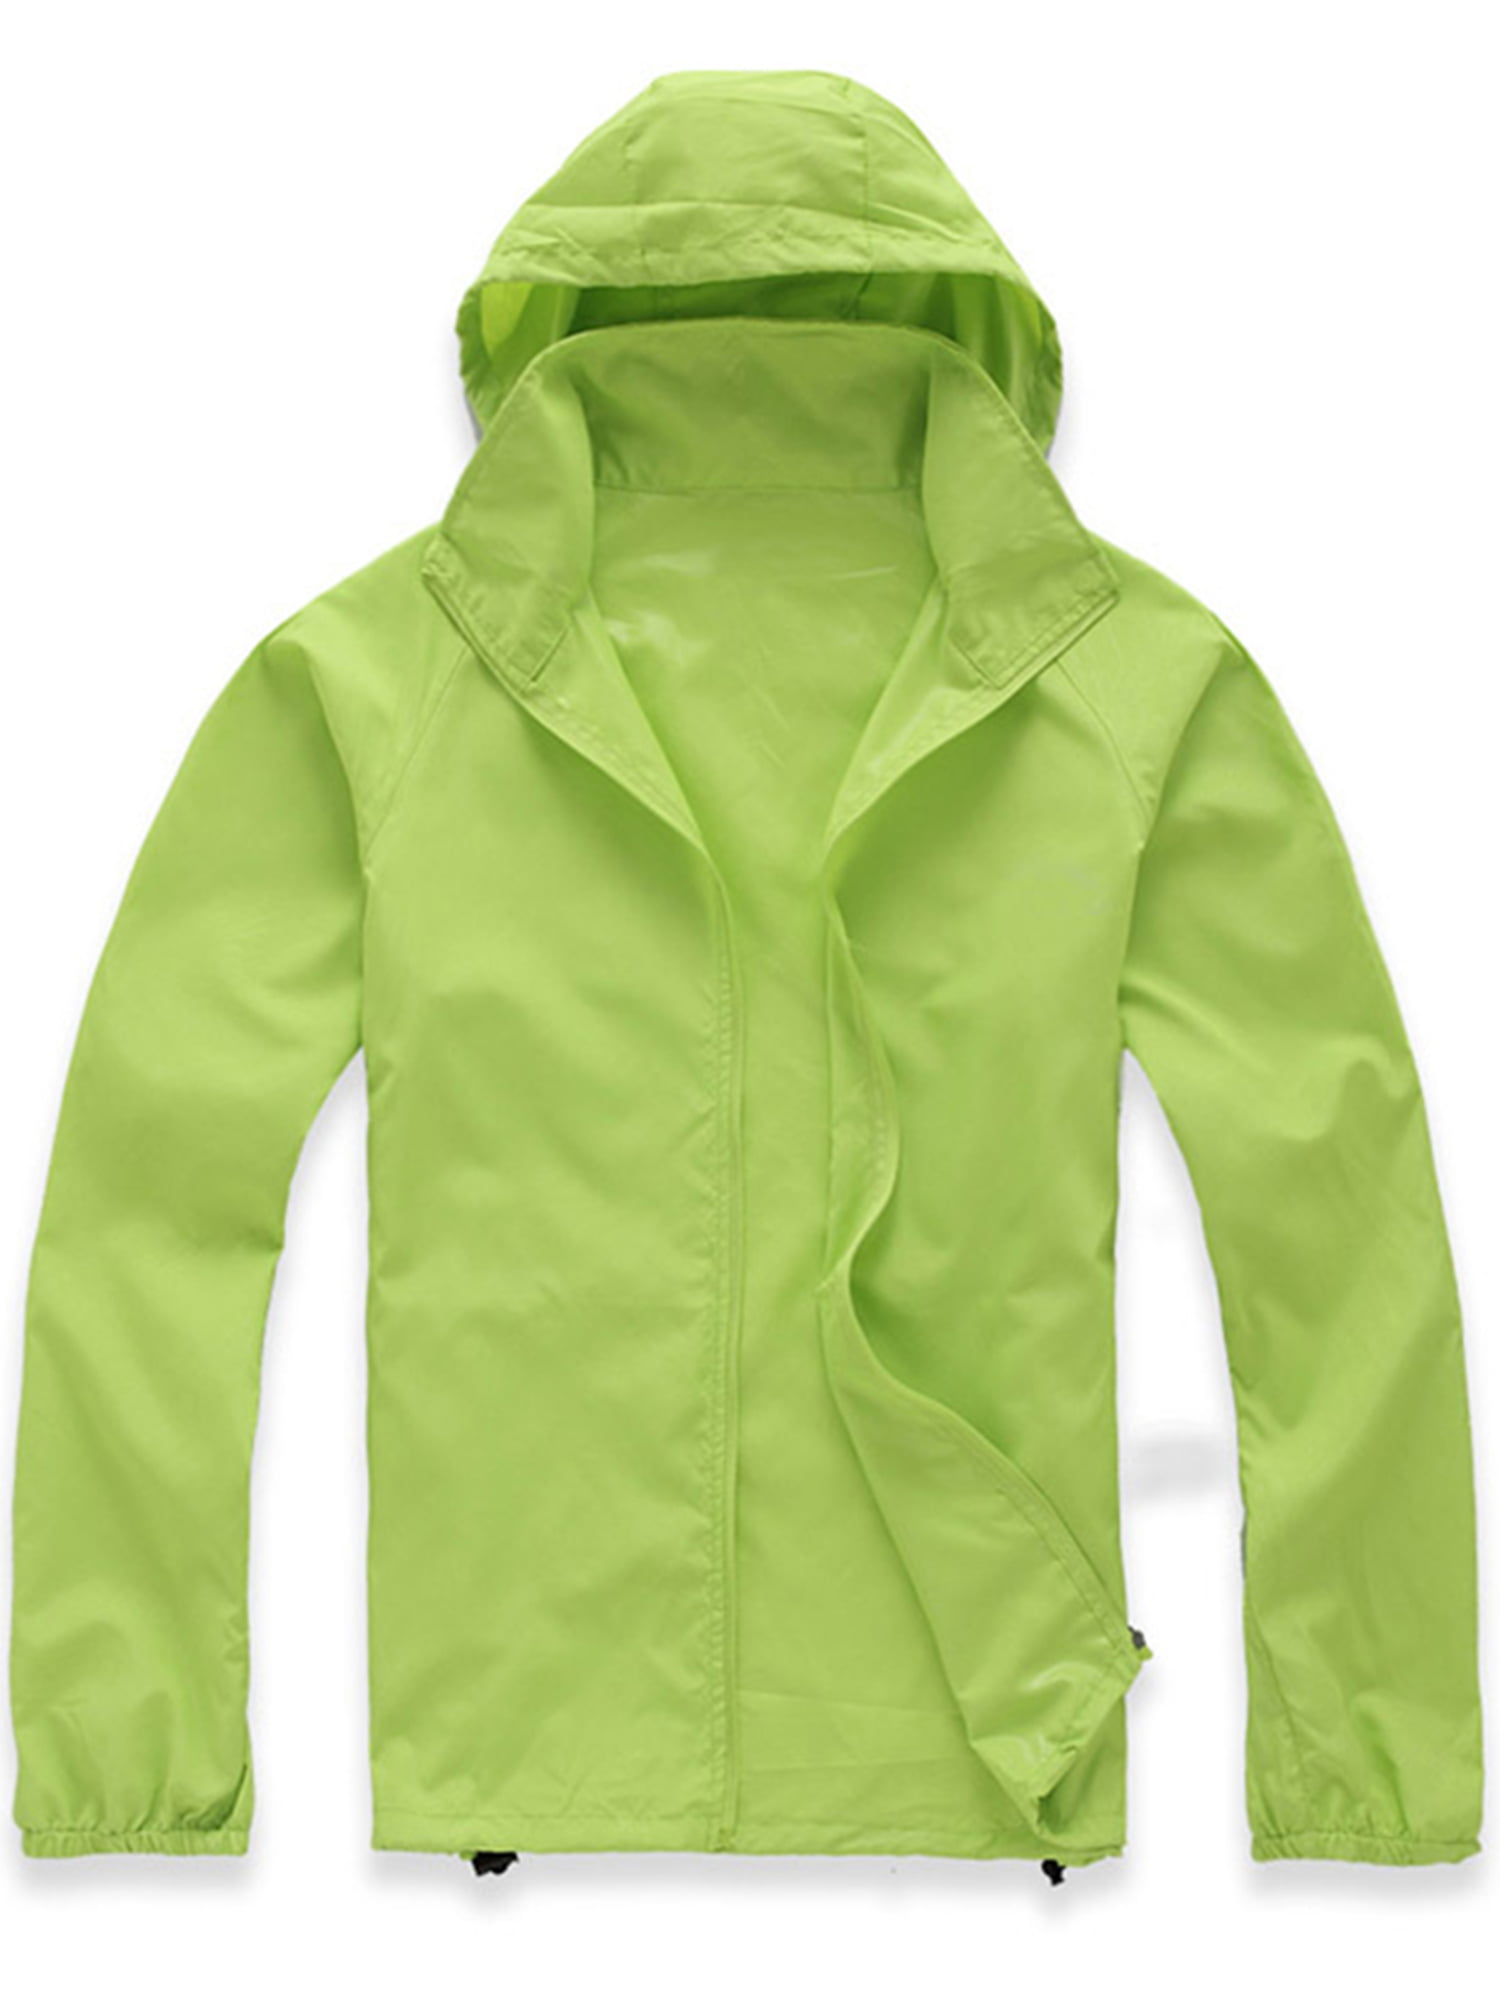 DOKASIN Women's Hiking Jacket Windbreaker Water Resistant Jacket Lightweight Hooded Rain Jacket Outdoor Shell Jacket